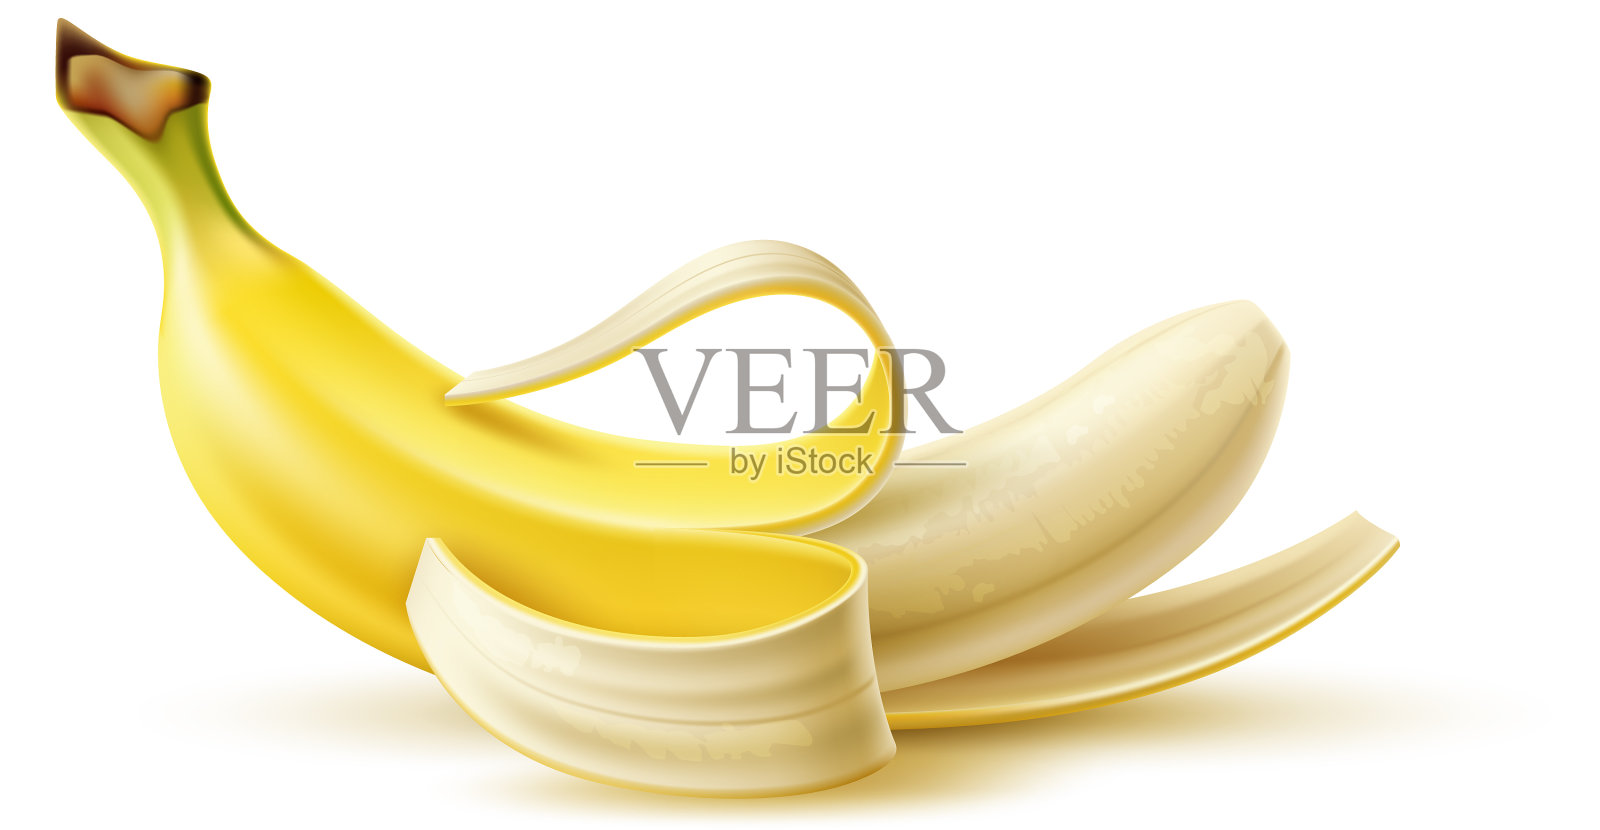 剥皮香蕉图片大全-剥皮香蕉高清图片下载-觅知网